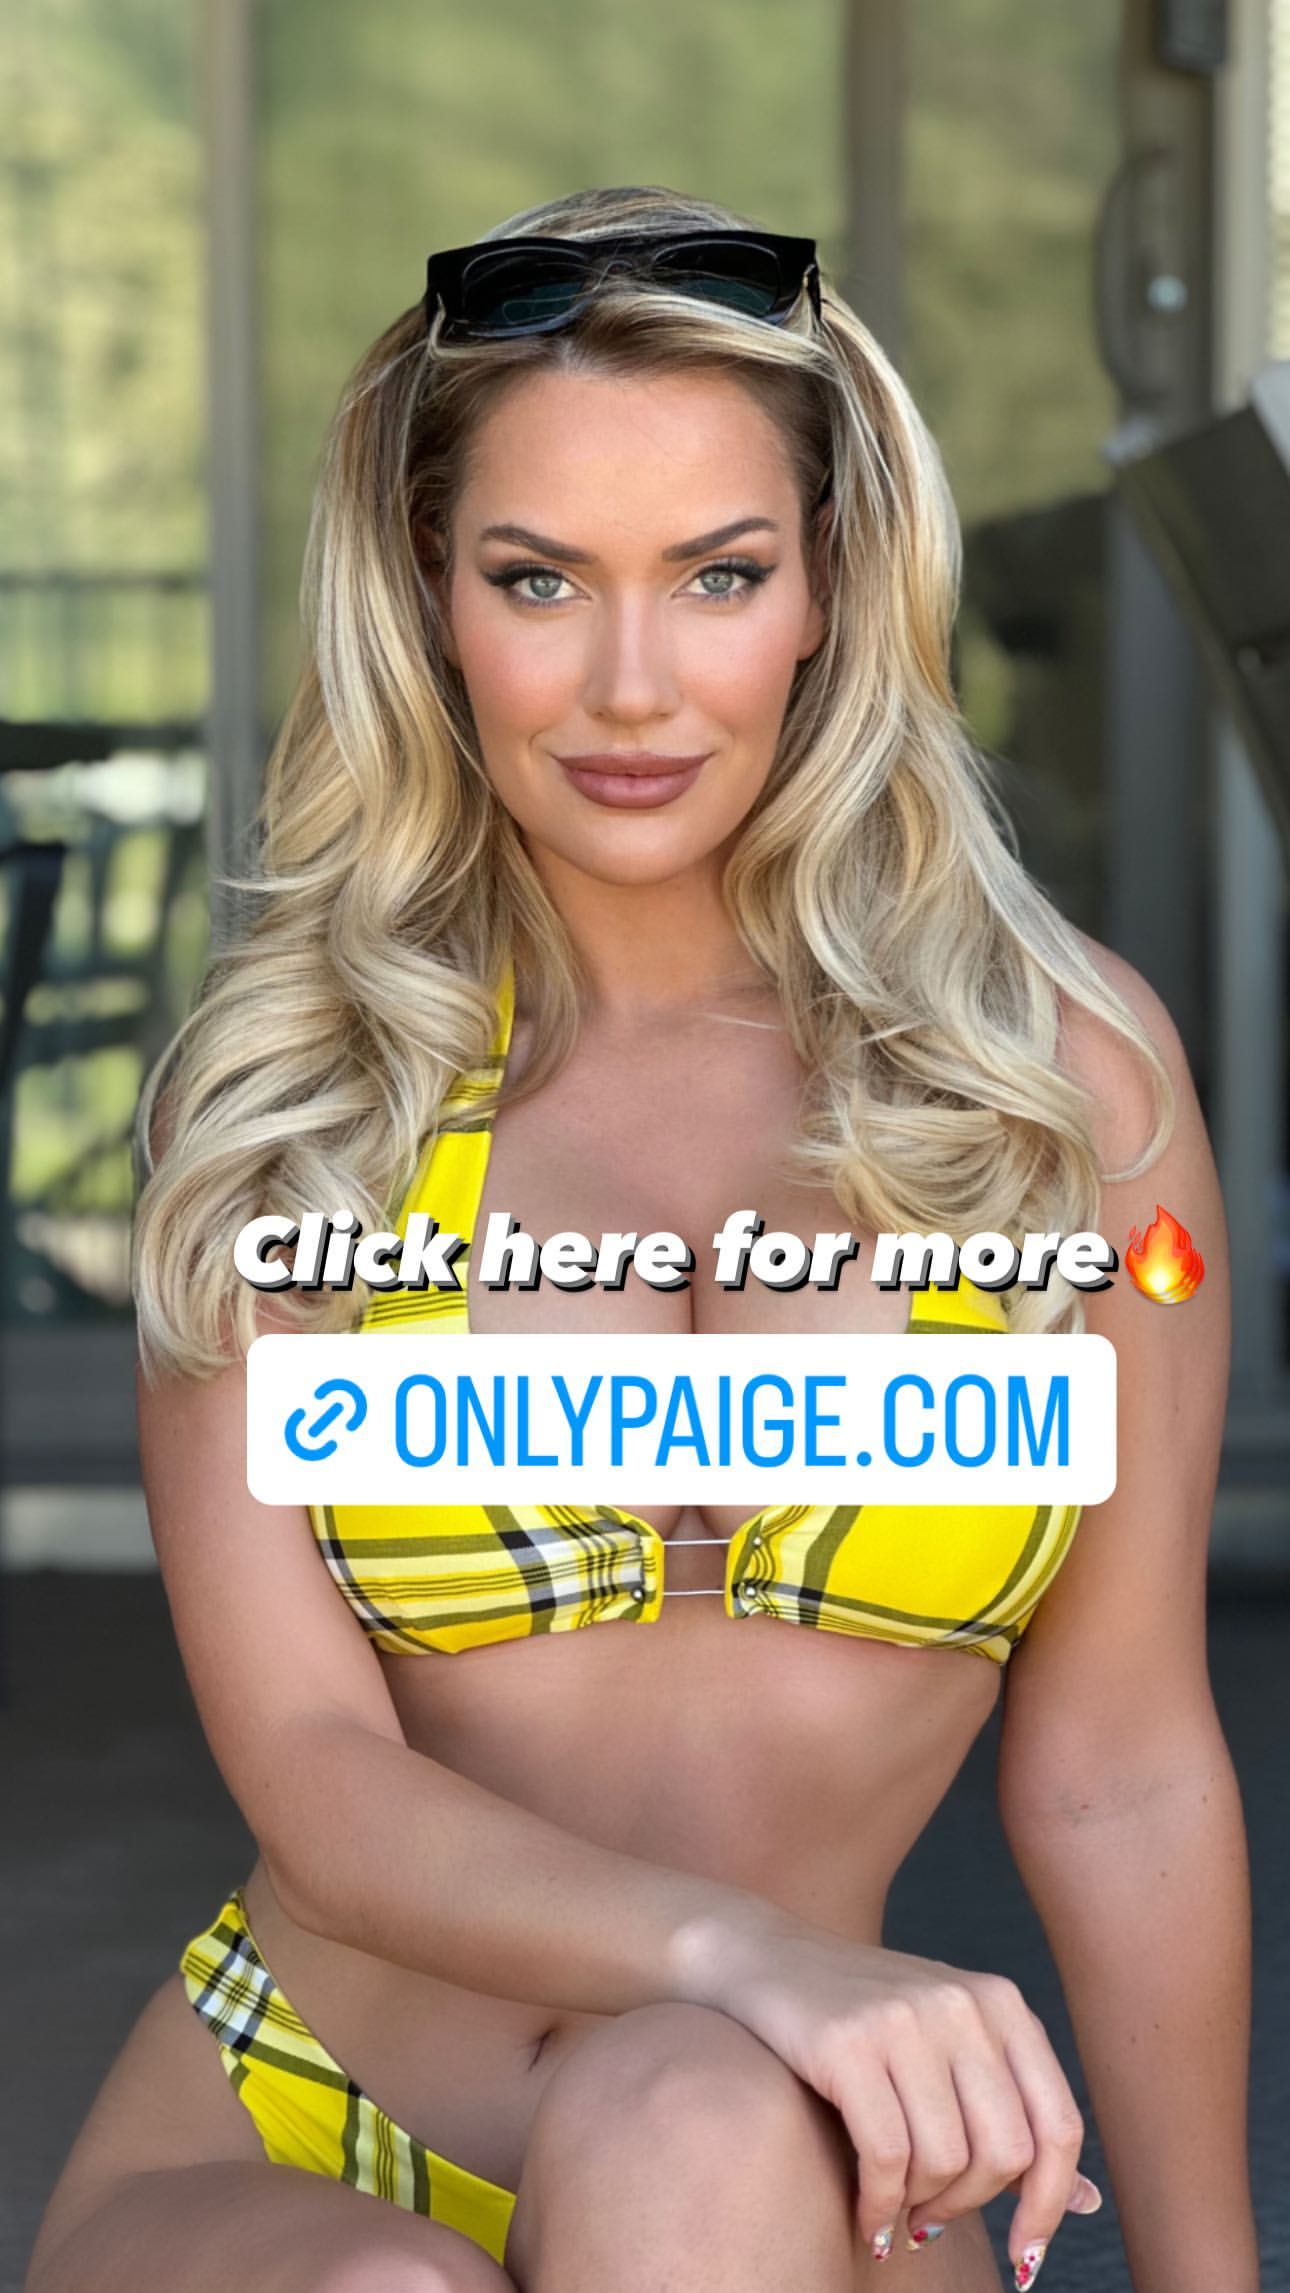 Paige Spiranac’s Sunglasses Giveaway Bikini Picture! - Photo 2